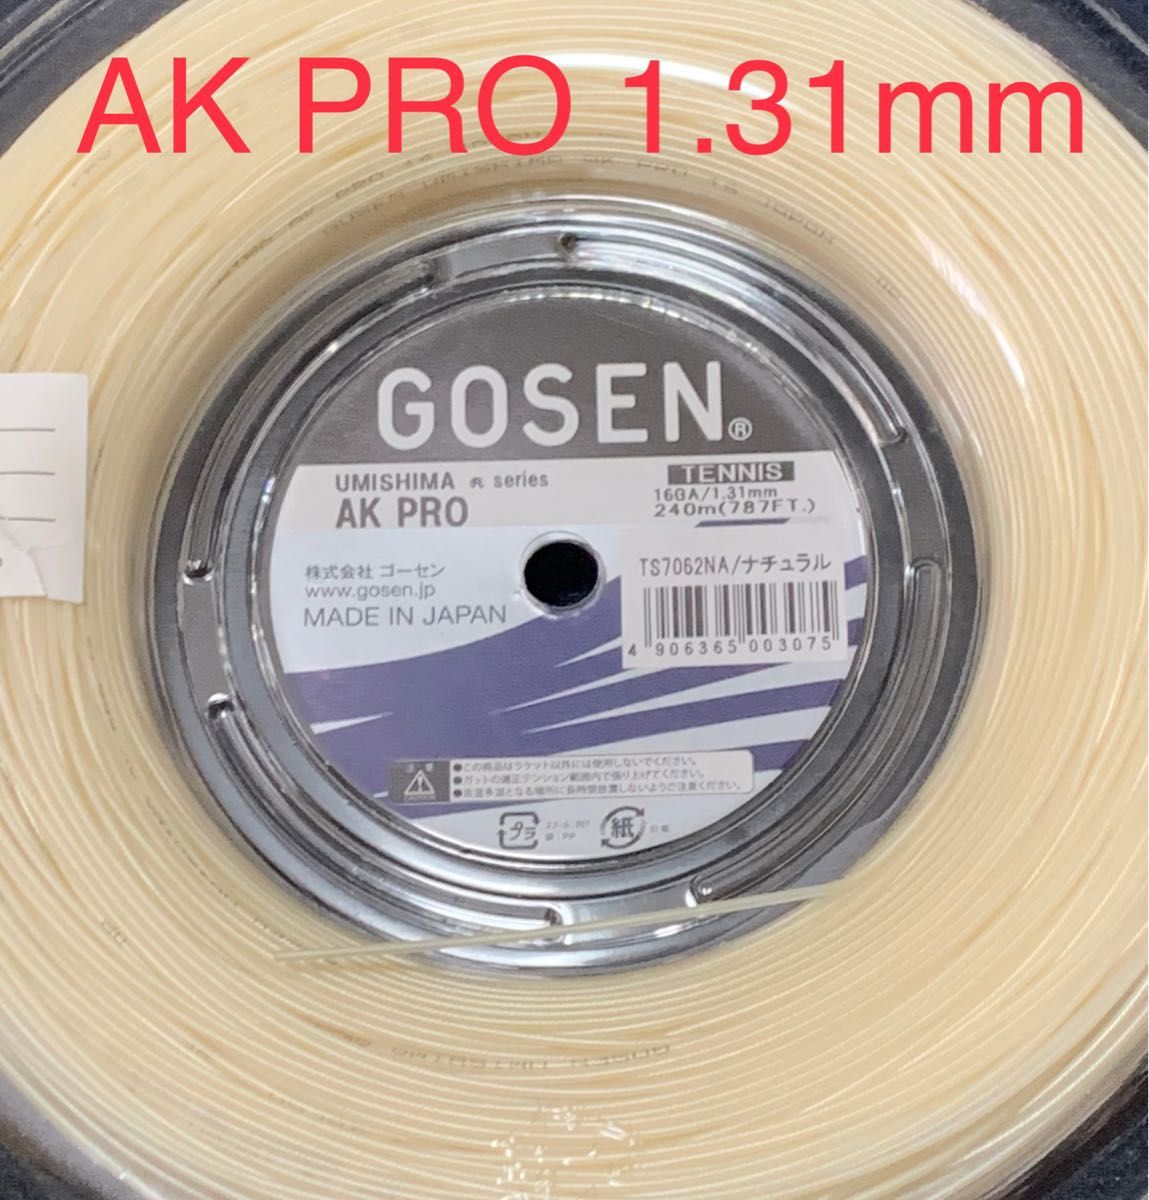 ゴーセン AK PRO1.31mm(1張り分)